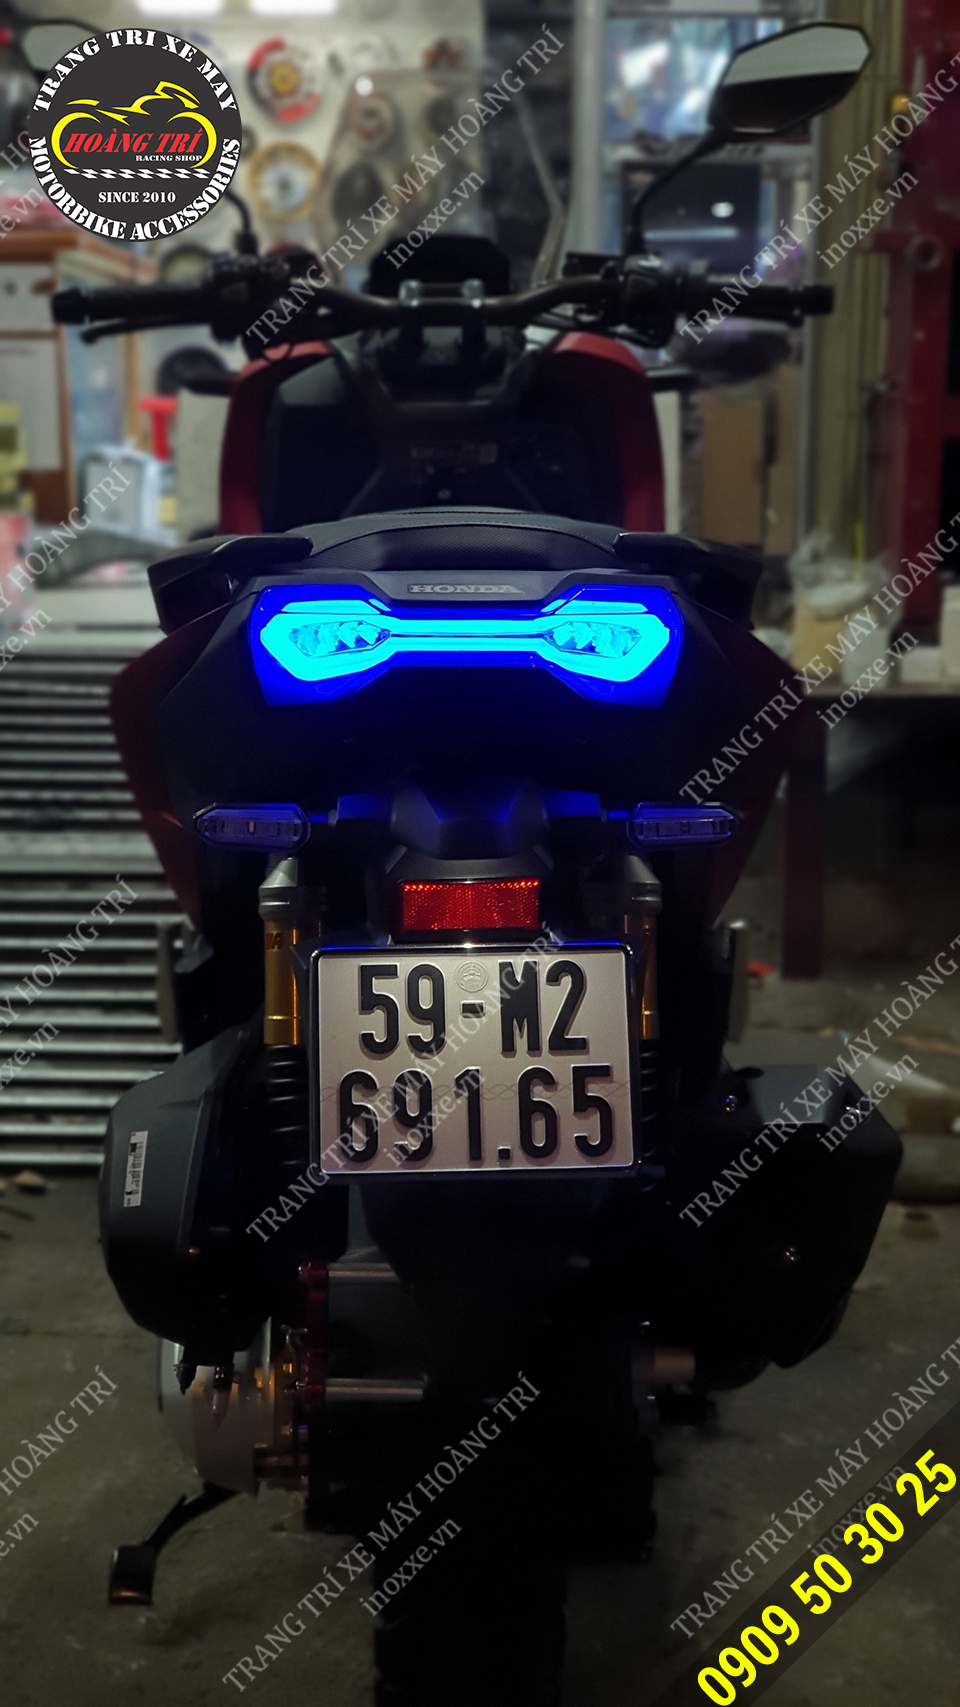 Cụm đèn hậu ADV 150 / ADV 160 - JPA Indonesia tích hợp xi nhan